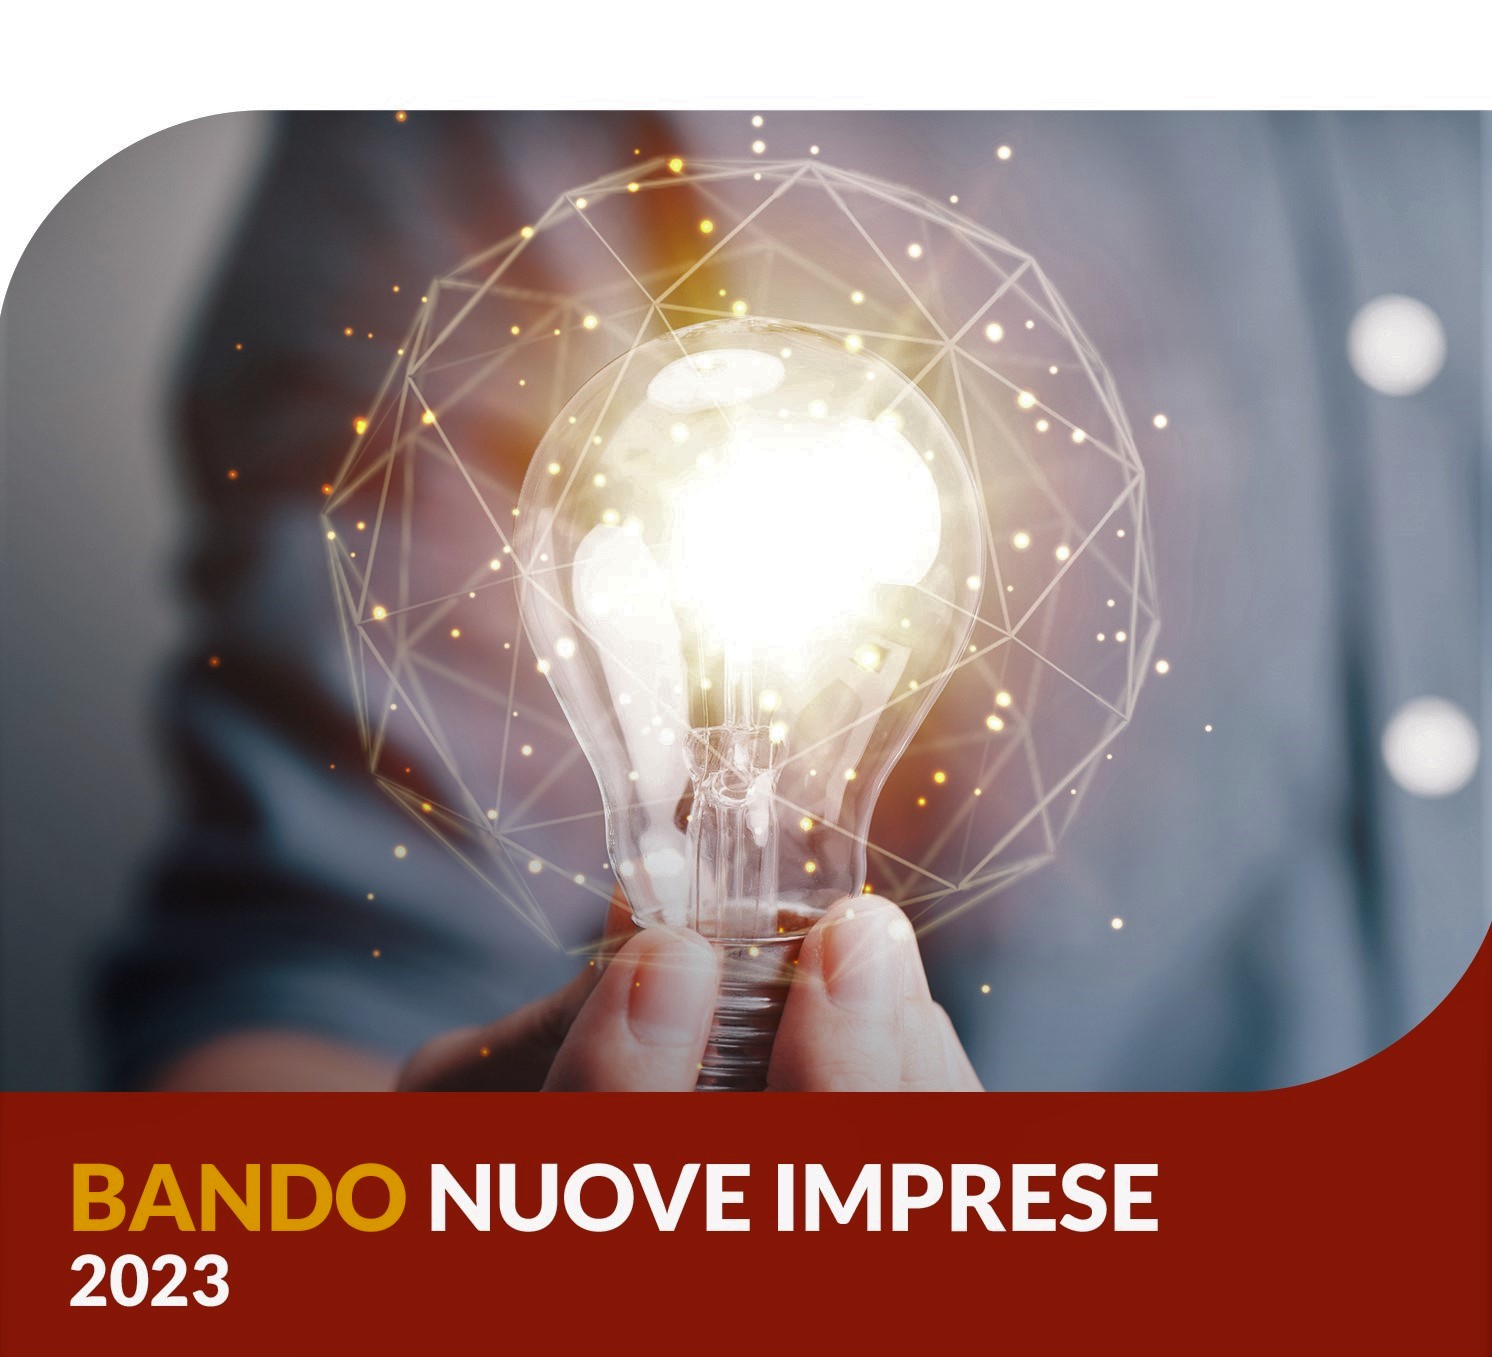 Bando Nuove Imprese (Start-up) 2023